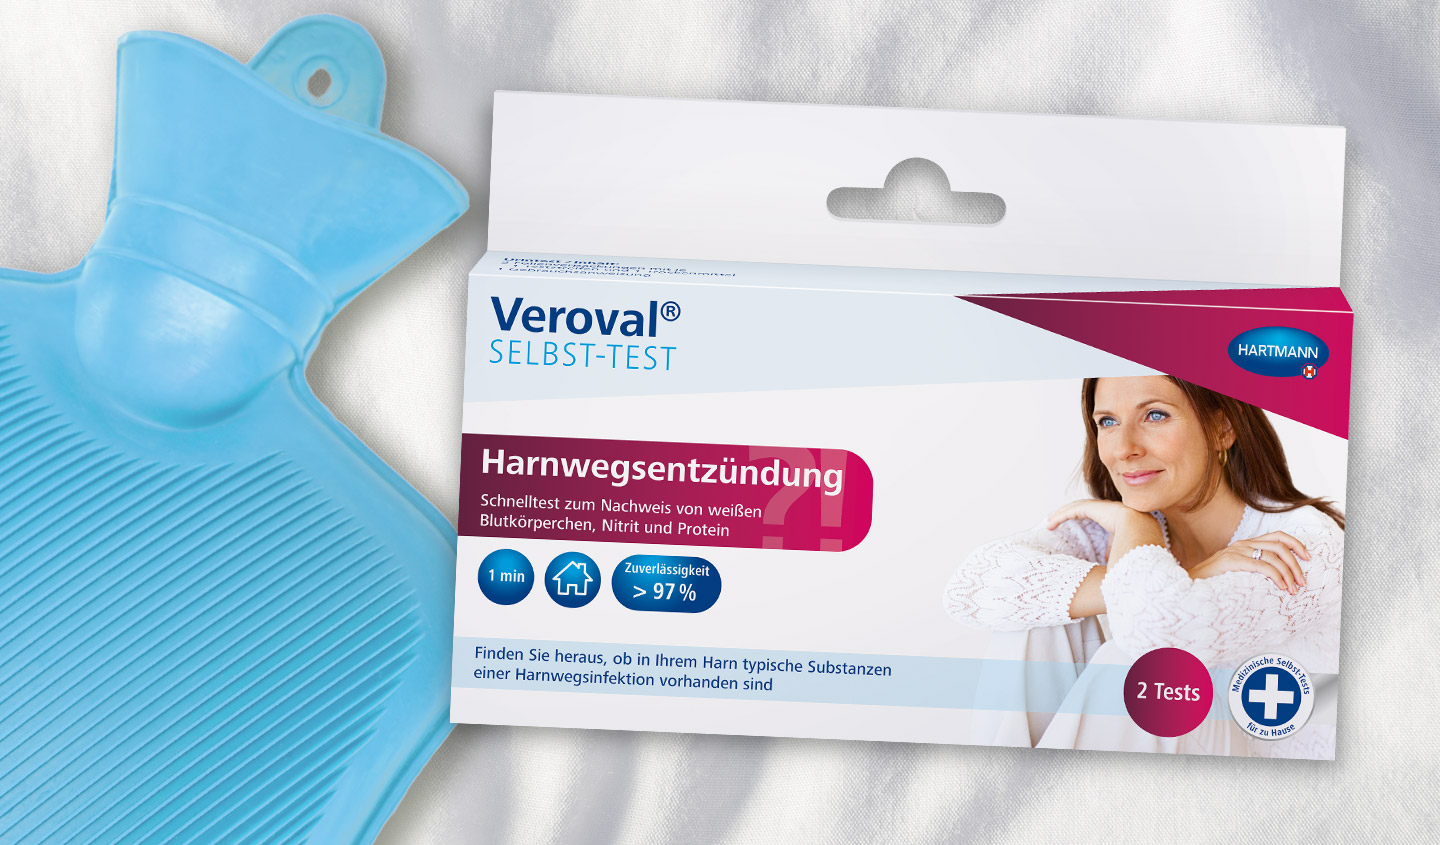 Verpackung des Veroval® Selbst-Tests Harnwegsentzündung liegt neben einer blauen Wärmflasche.